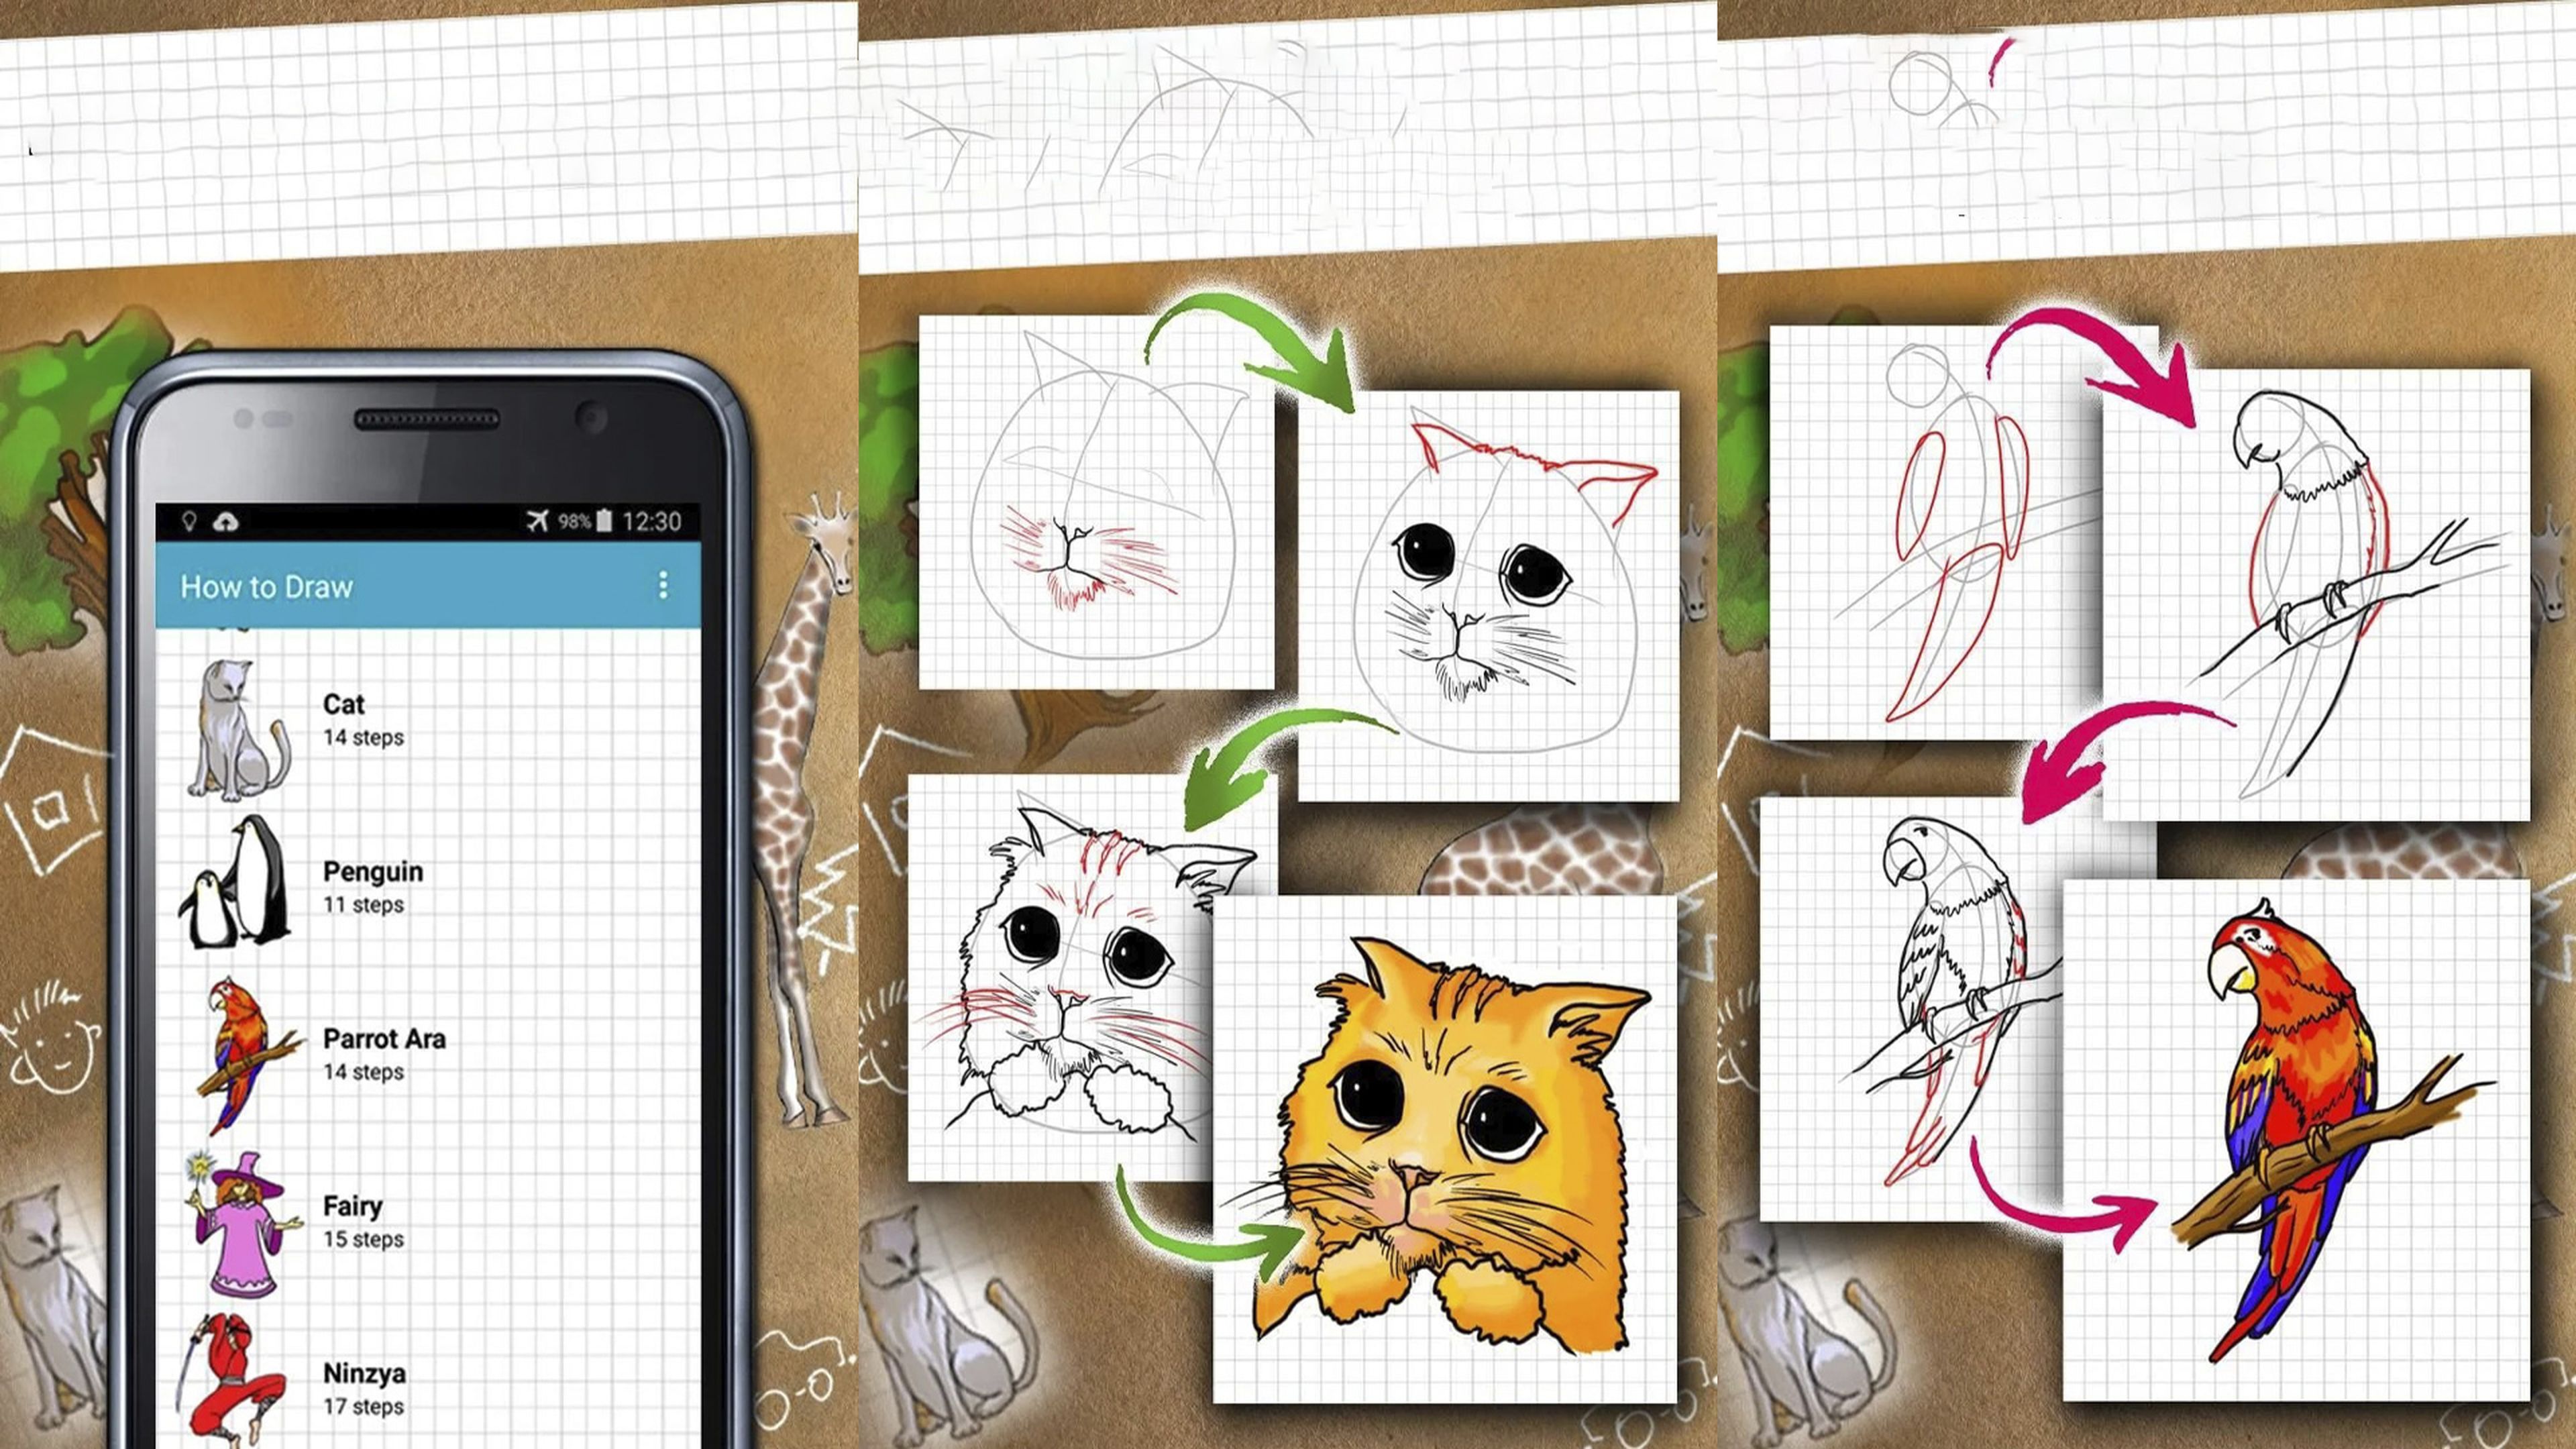 Aprender a Dibujar paso a paso - Aplicaciones en Google Play